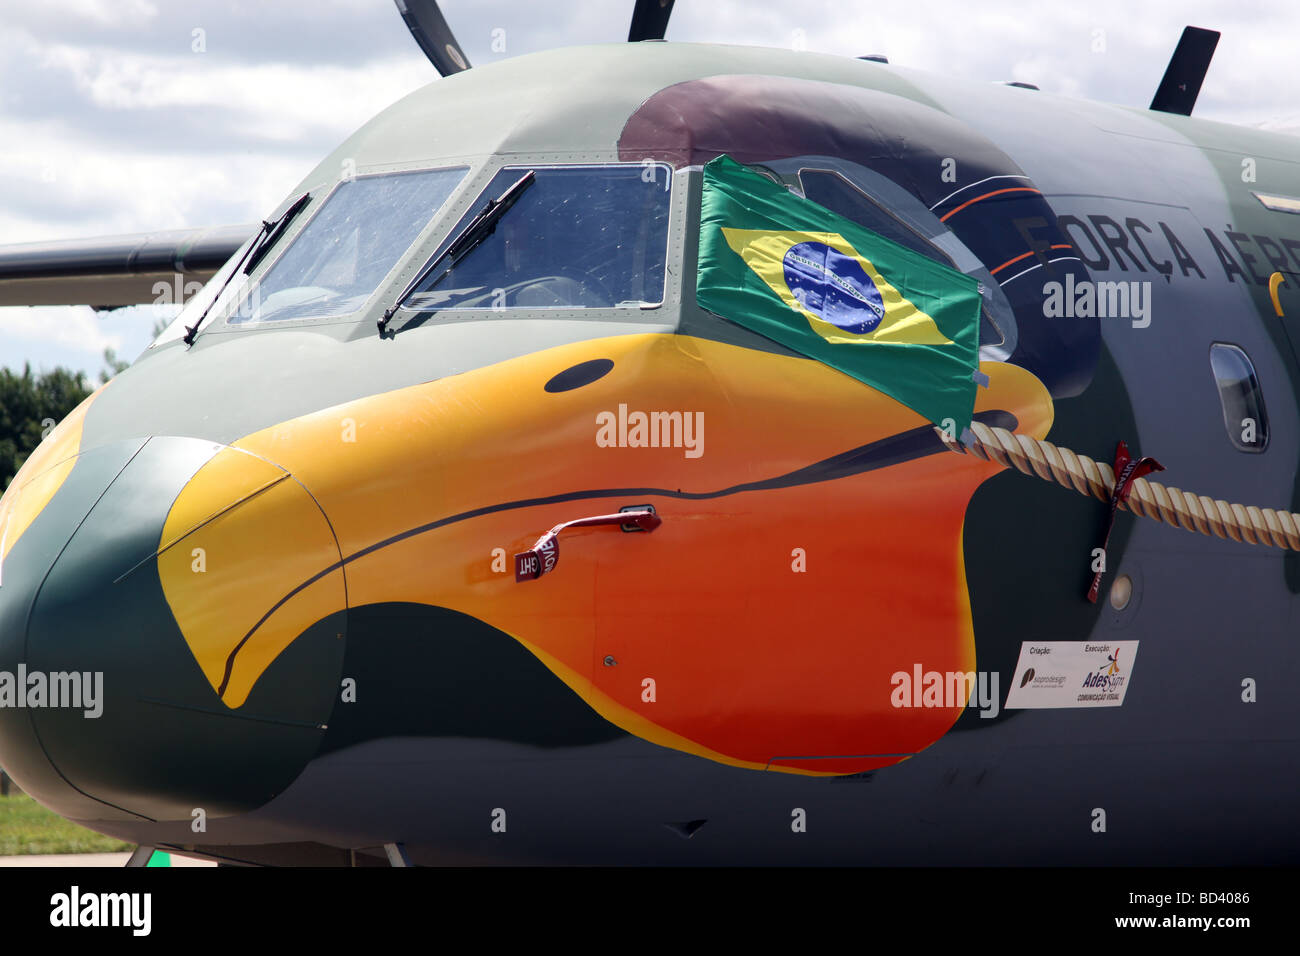 Brazilian Air Force(Força Aérea Brasileira) Hercules with bird graphic Stock Photo